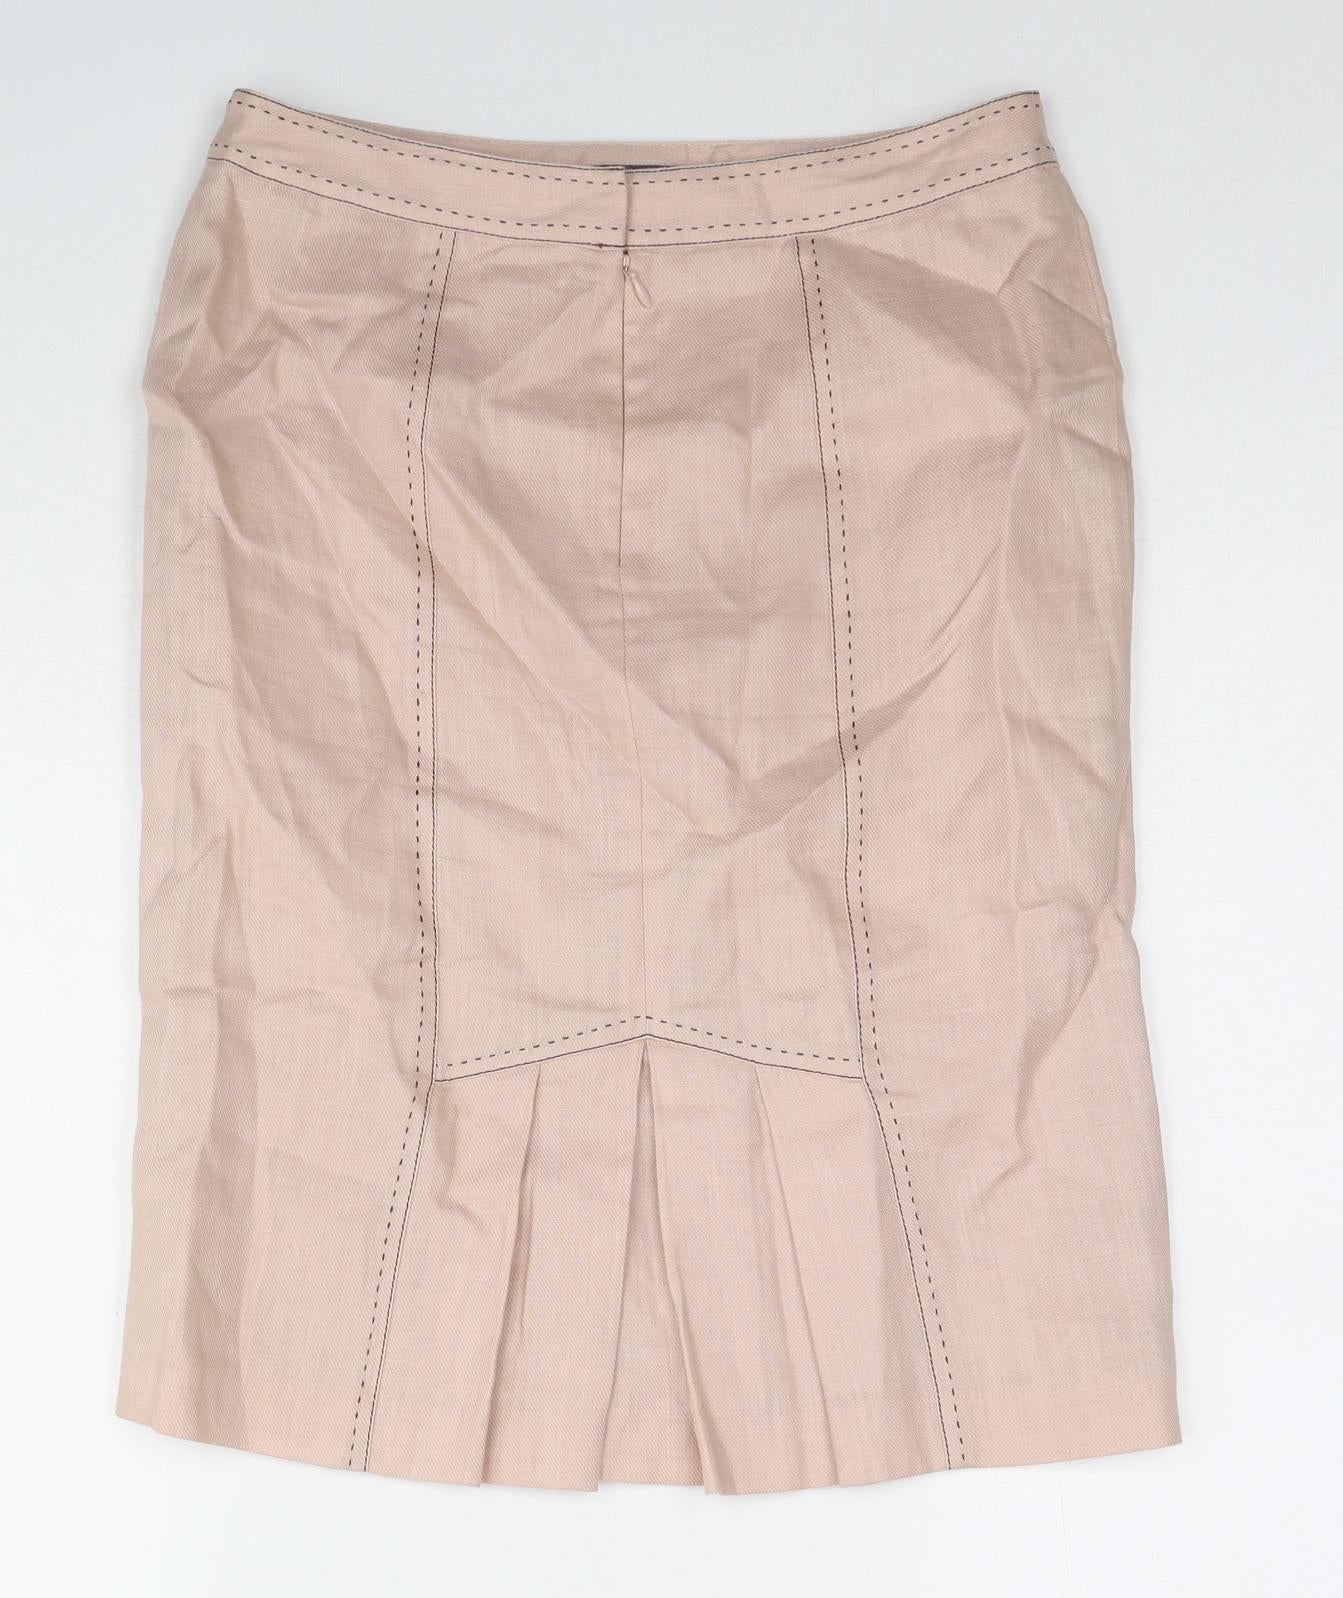 NEXT Womens Pink Ramie A-Line Skirt Size 8 Zip